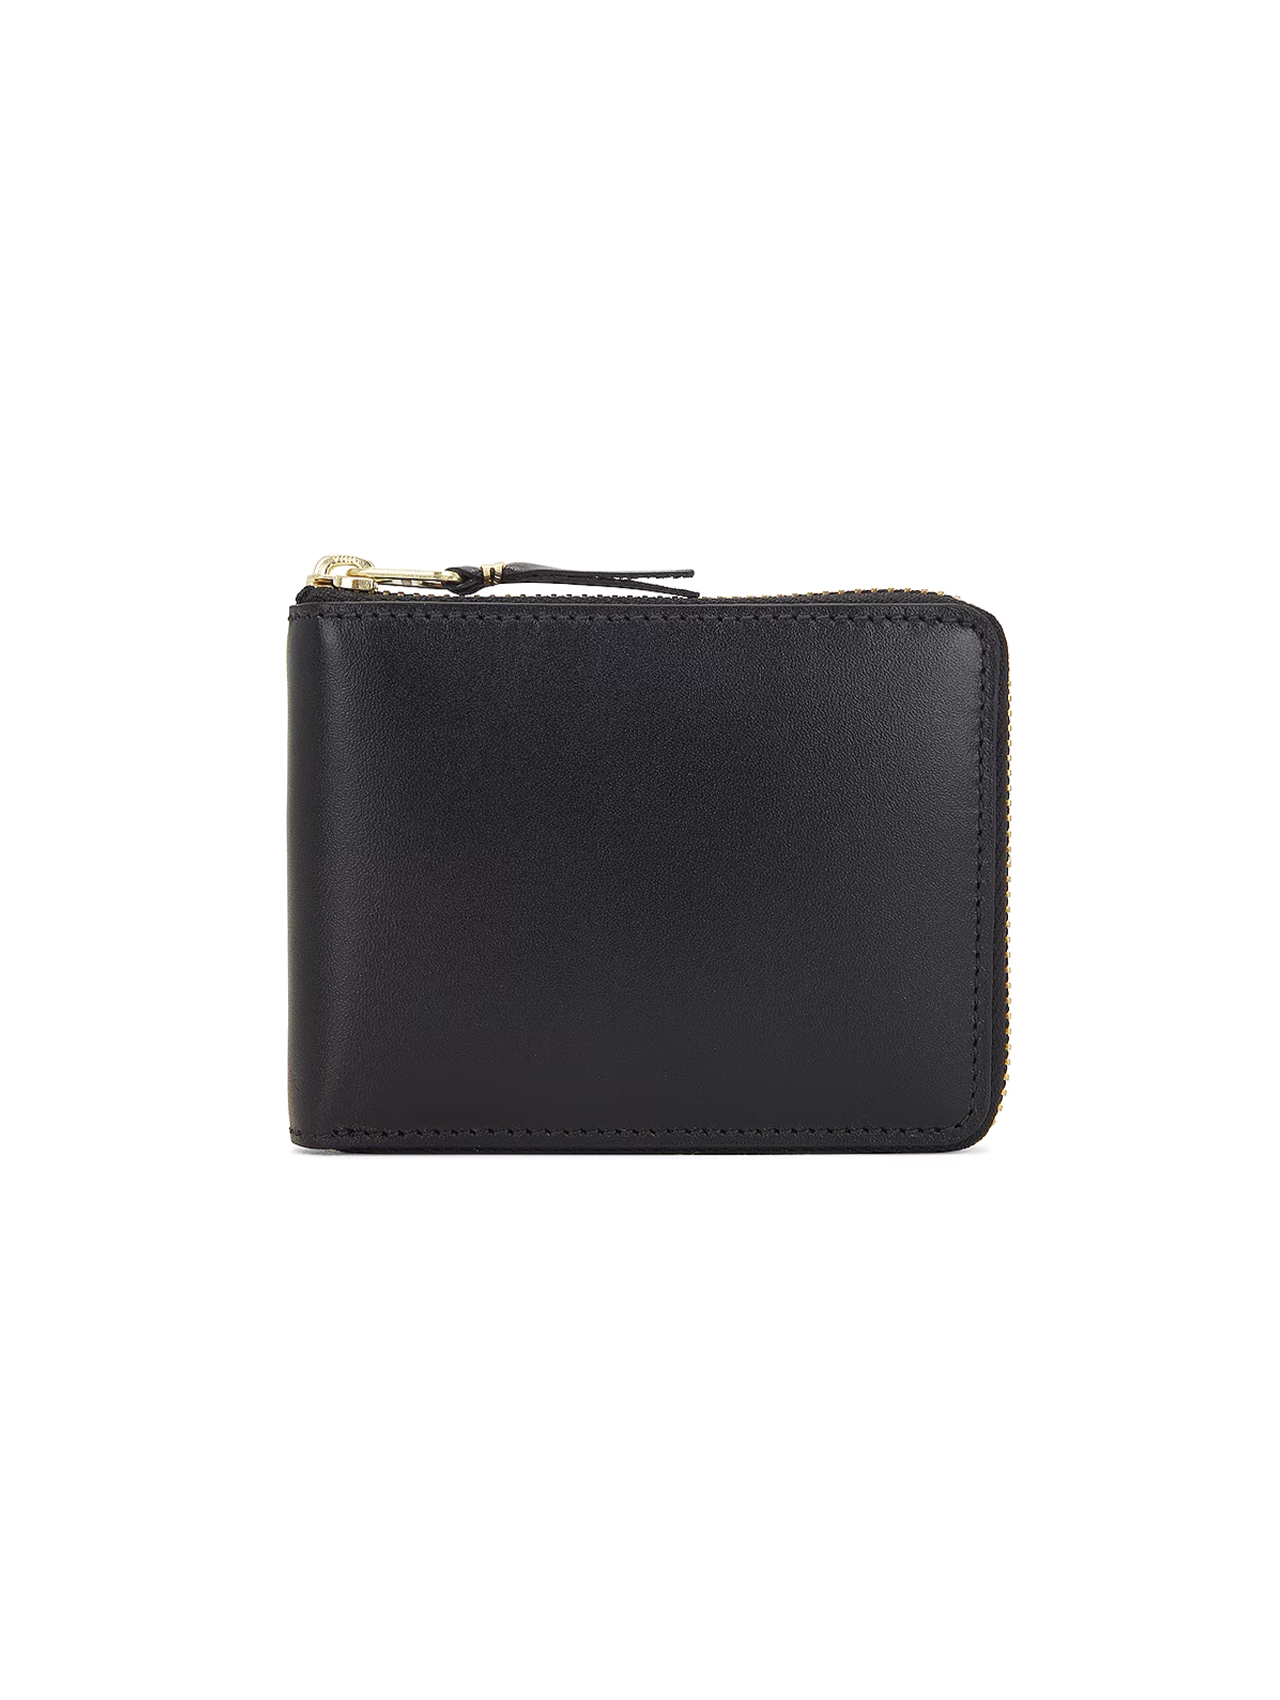 CDG Wallet Black Classic Zip Wallet